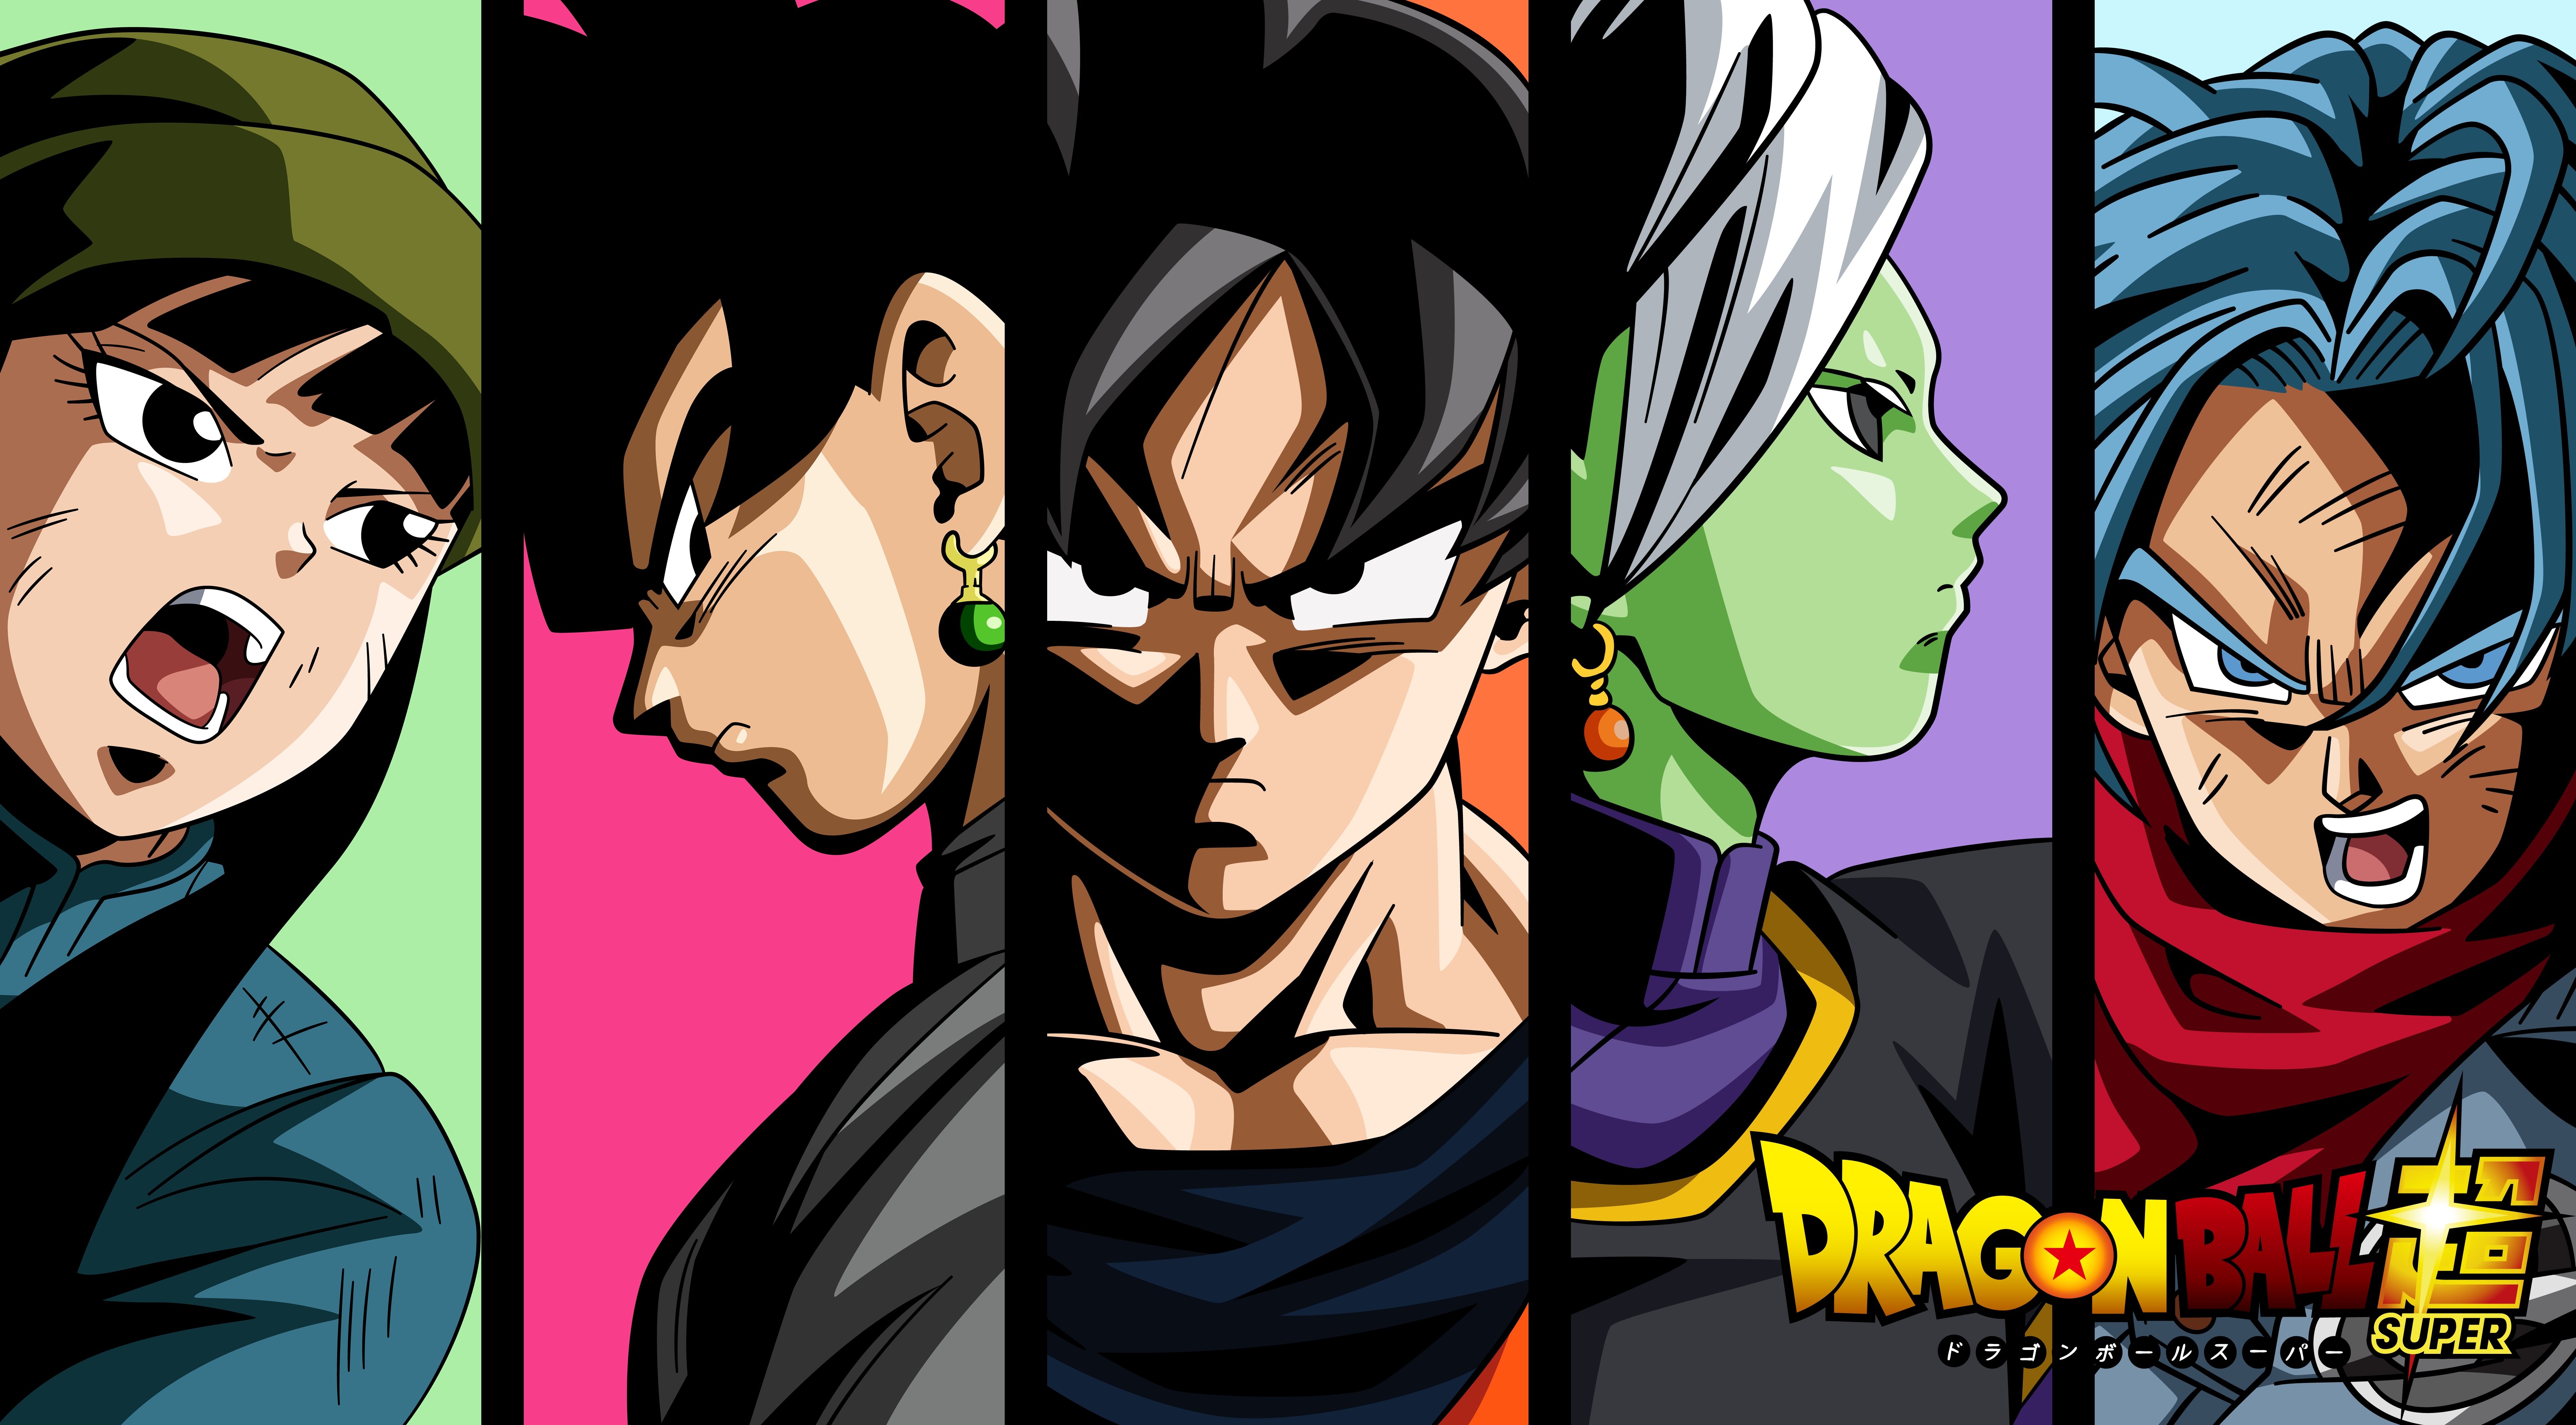 Fondos de pantalla Anime Dragon Ball Super, Mai, Black Goku, Goku, Zamasu y Future Trunks Saga